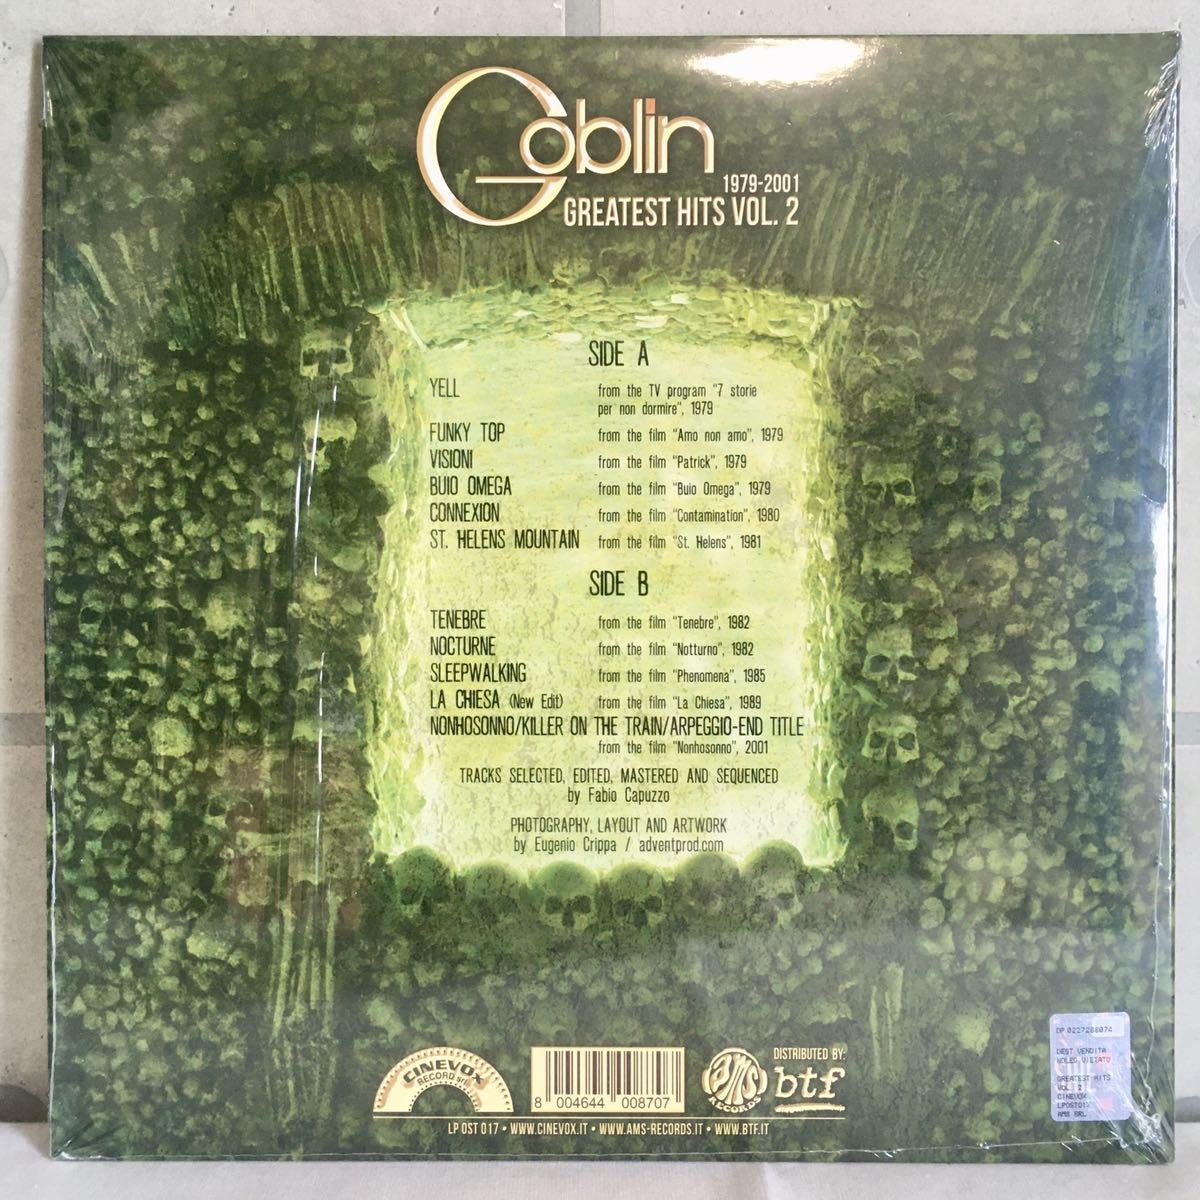 美品 伊盤 LP / Goblin (ゴブリン) - GREATEST HITS VOL. 2 1979-2001 (LP OST 017) / プログレ ファンク レアグルーヴ ホラー映画 /_画像2